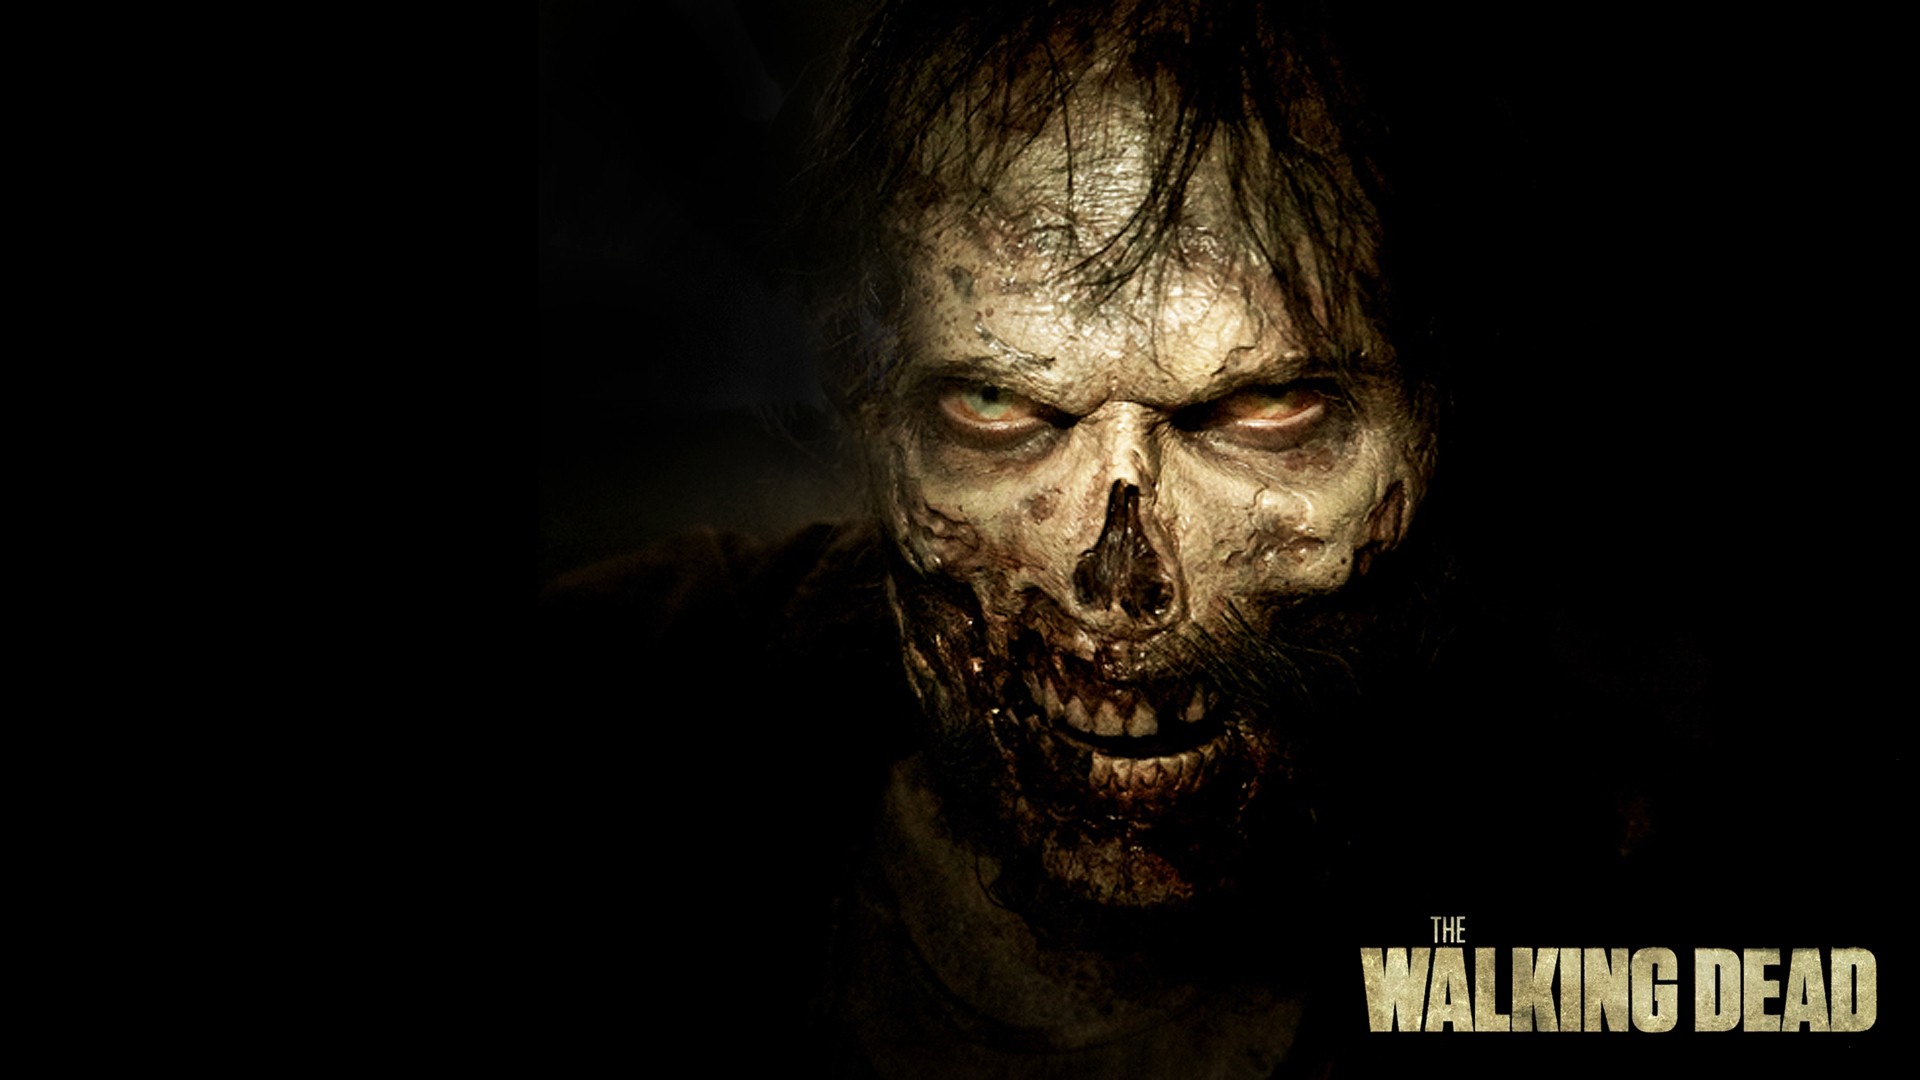 Walking Dead Wallpaper Zombie - HD Wallpaper 